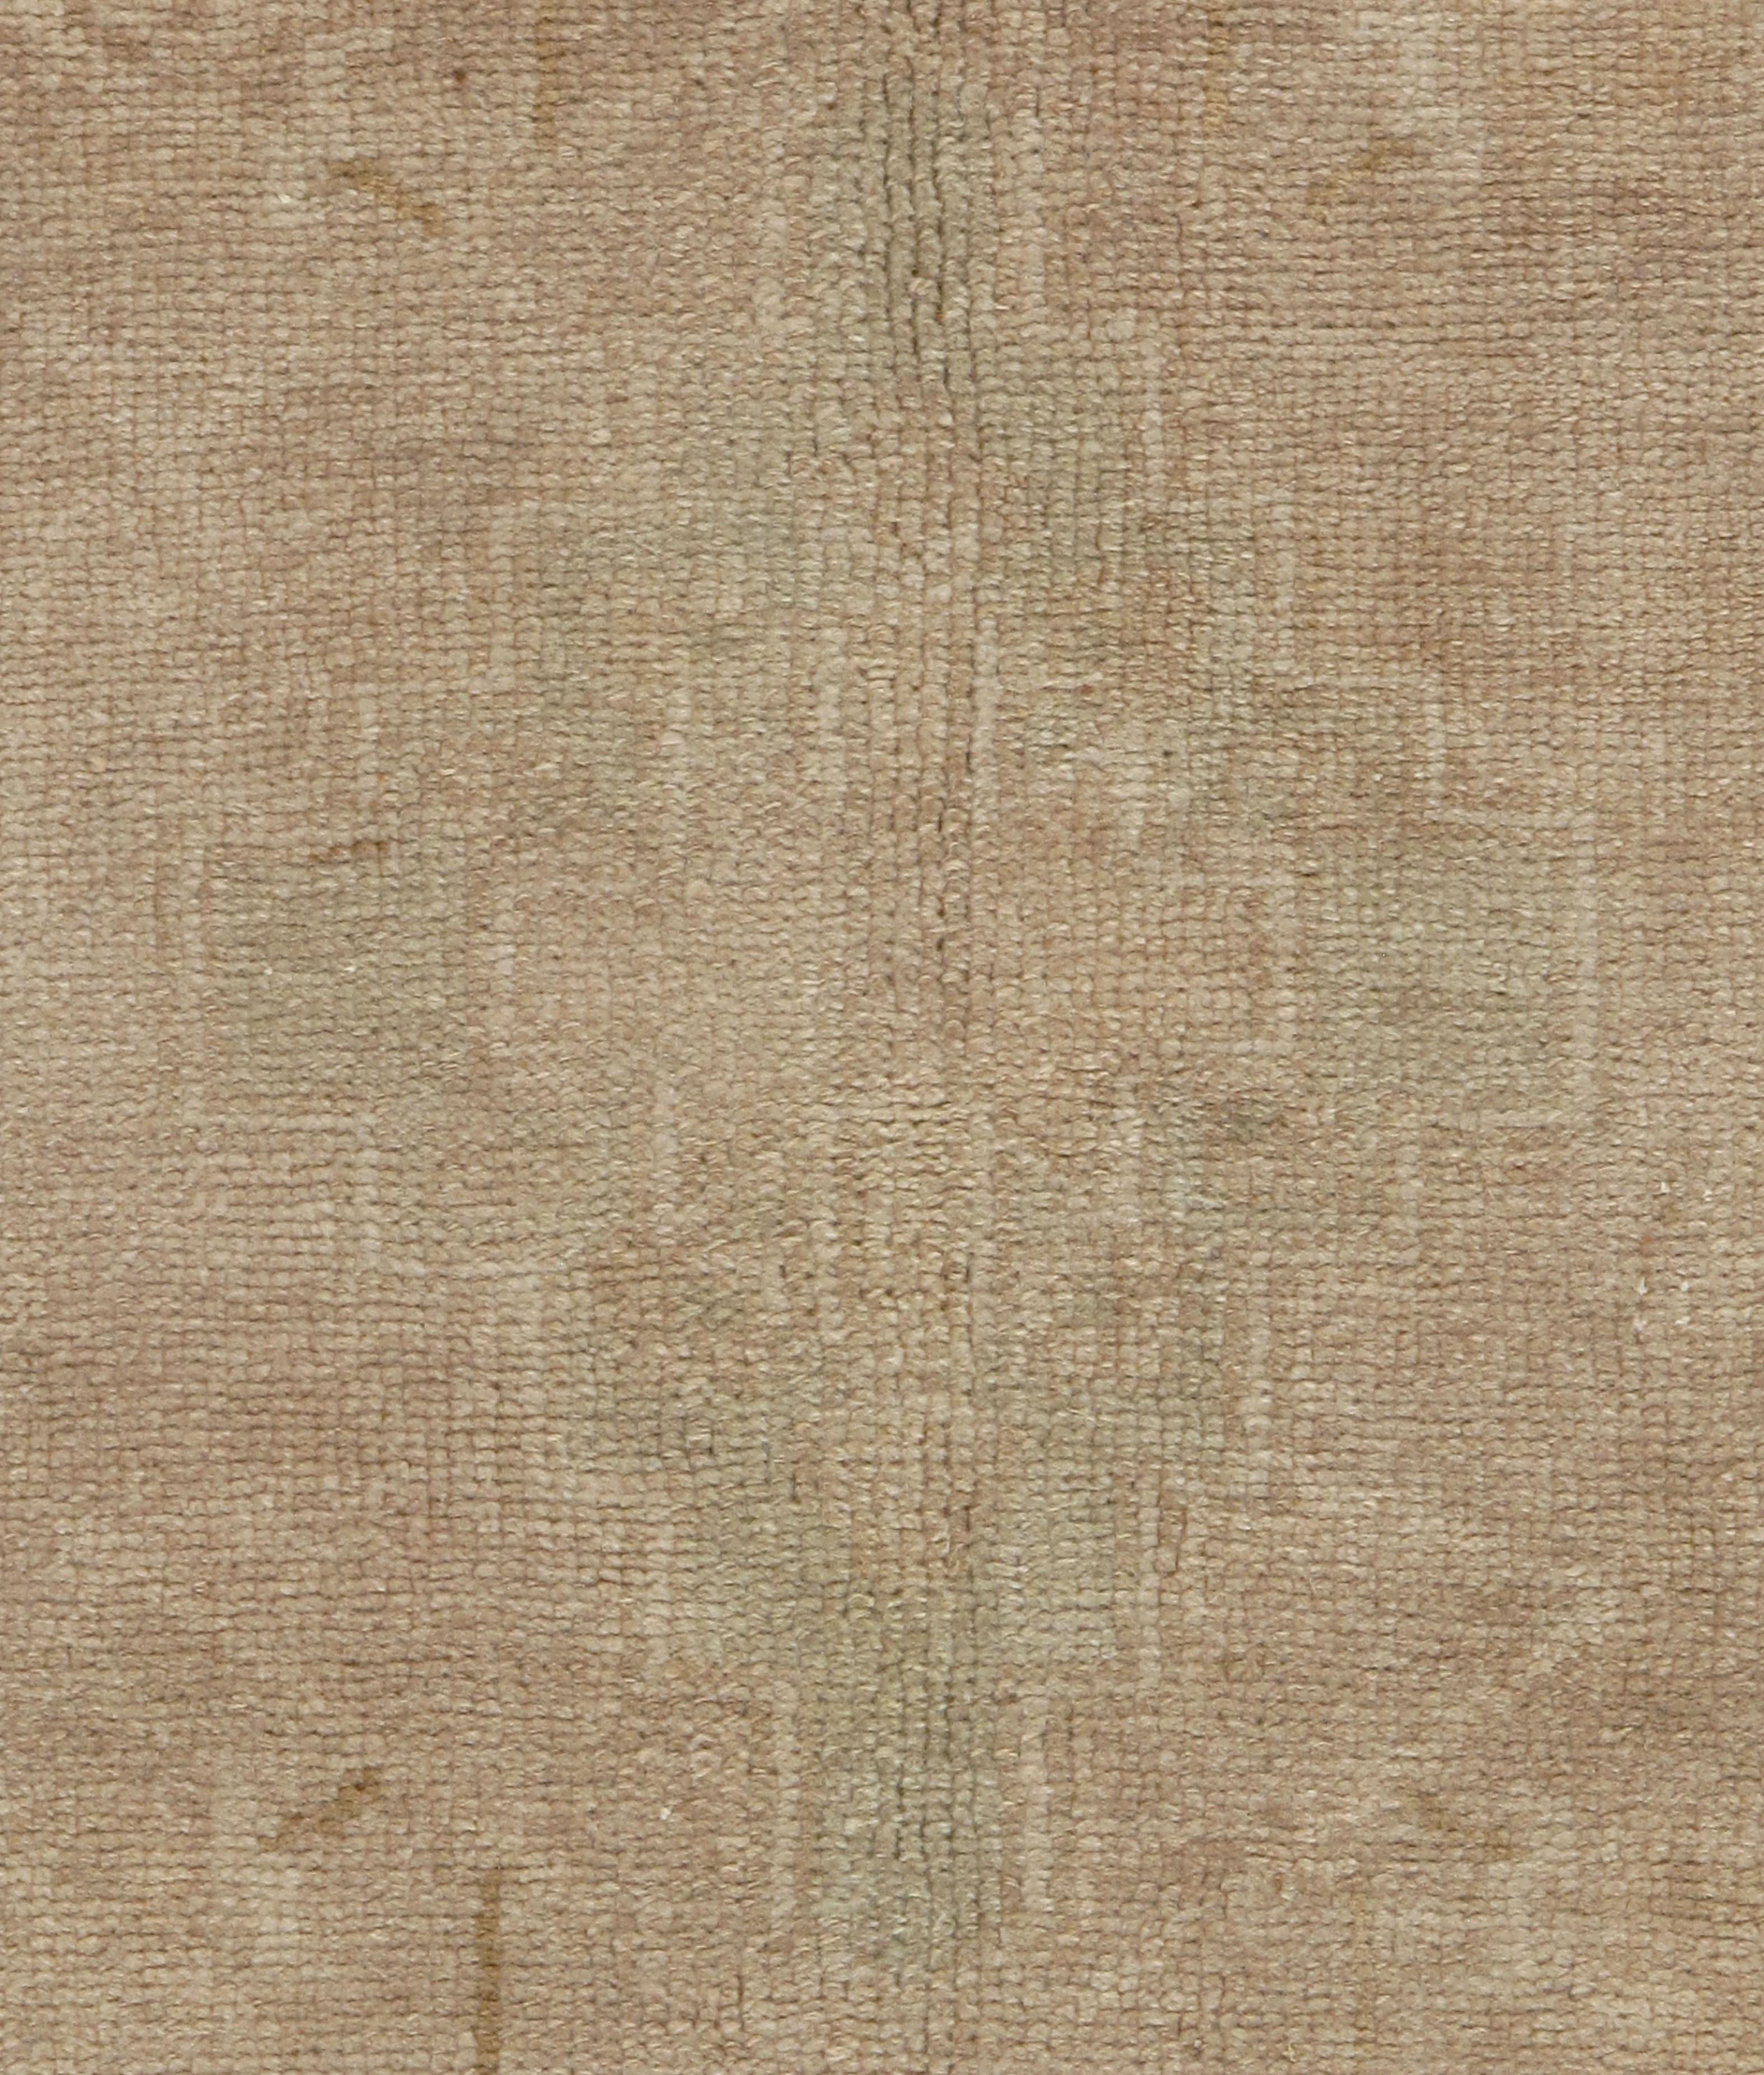 Vieux tapis turc Oushak, mesure 4'4 x 9'4. Tissé à la main en Turquie où le tissage de tapis est une culture plutôt qu'un commerce. Les tapis de Turquie sont connus pour la haute qualité de leur laine, leurs beaux motifs et leurs couleurs chaudes.